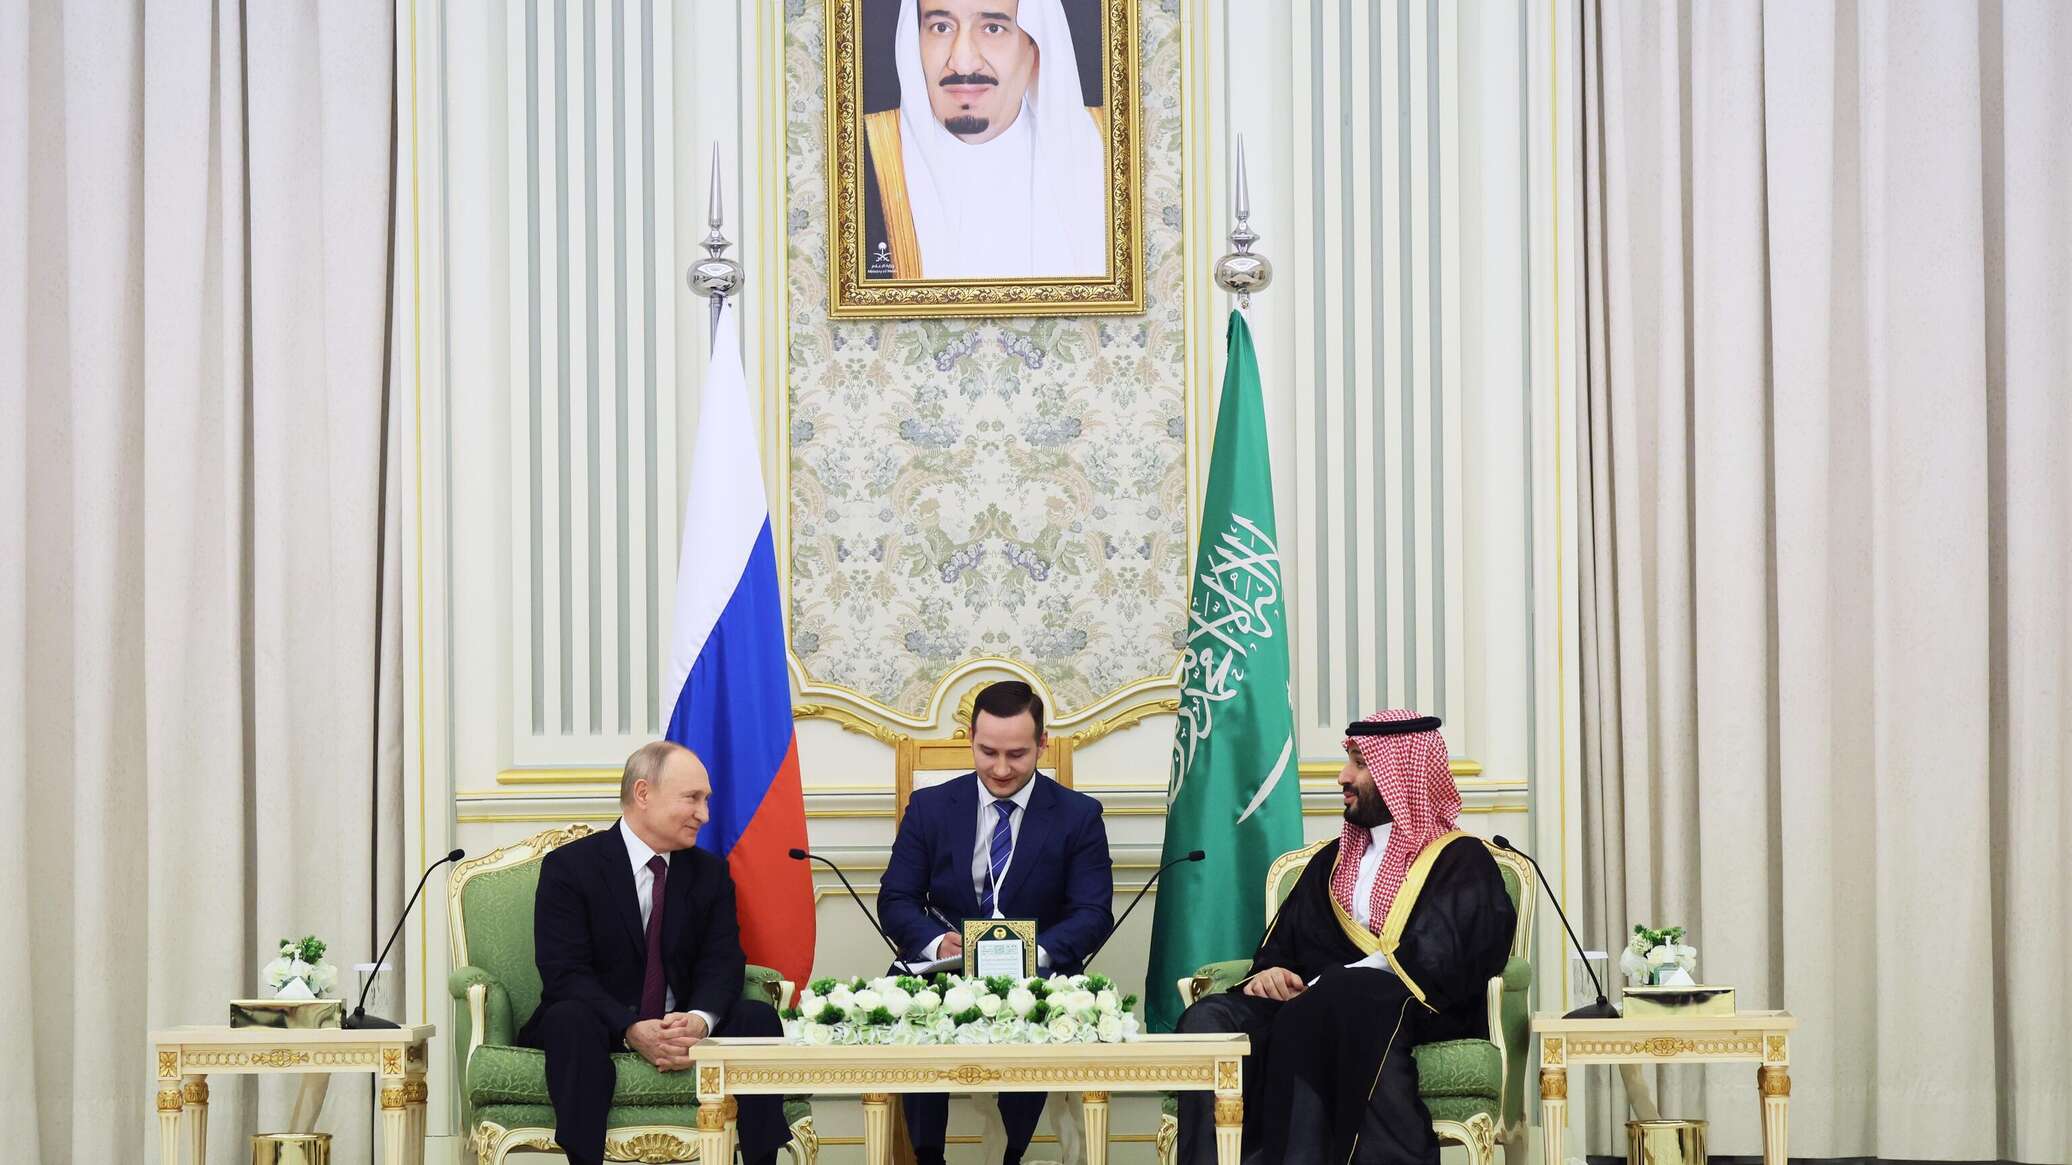 خبير سوري لـ "سبوتنيك": زيارة بوتين إلى السعودية والإمارات مؤشر تحرك نحو قطبية جديدة